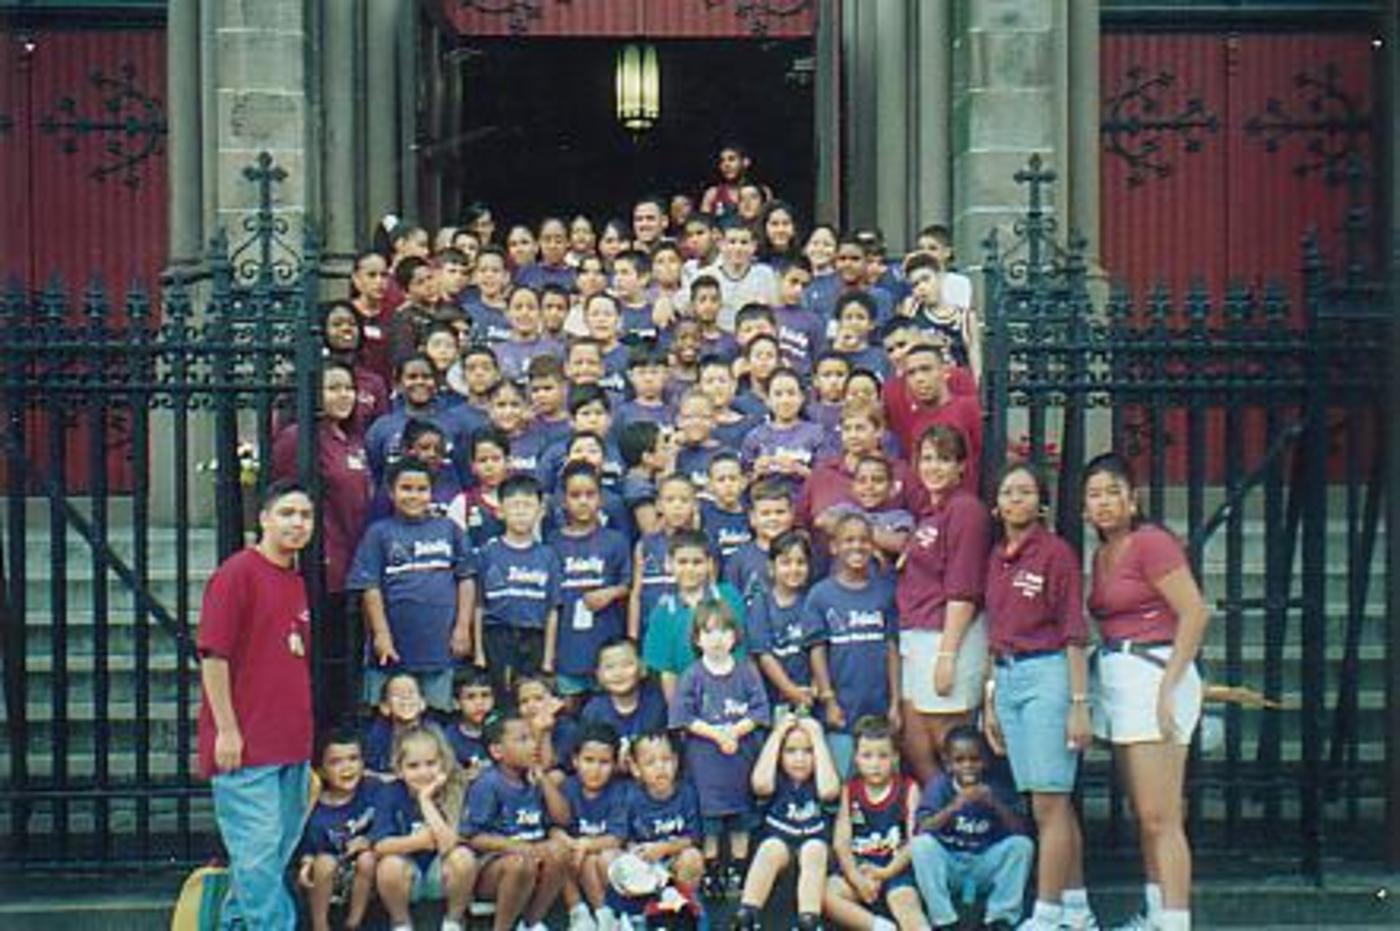 The Trinity Summer Fun School 1997